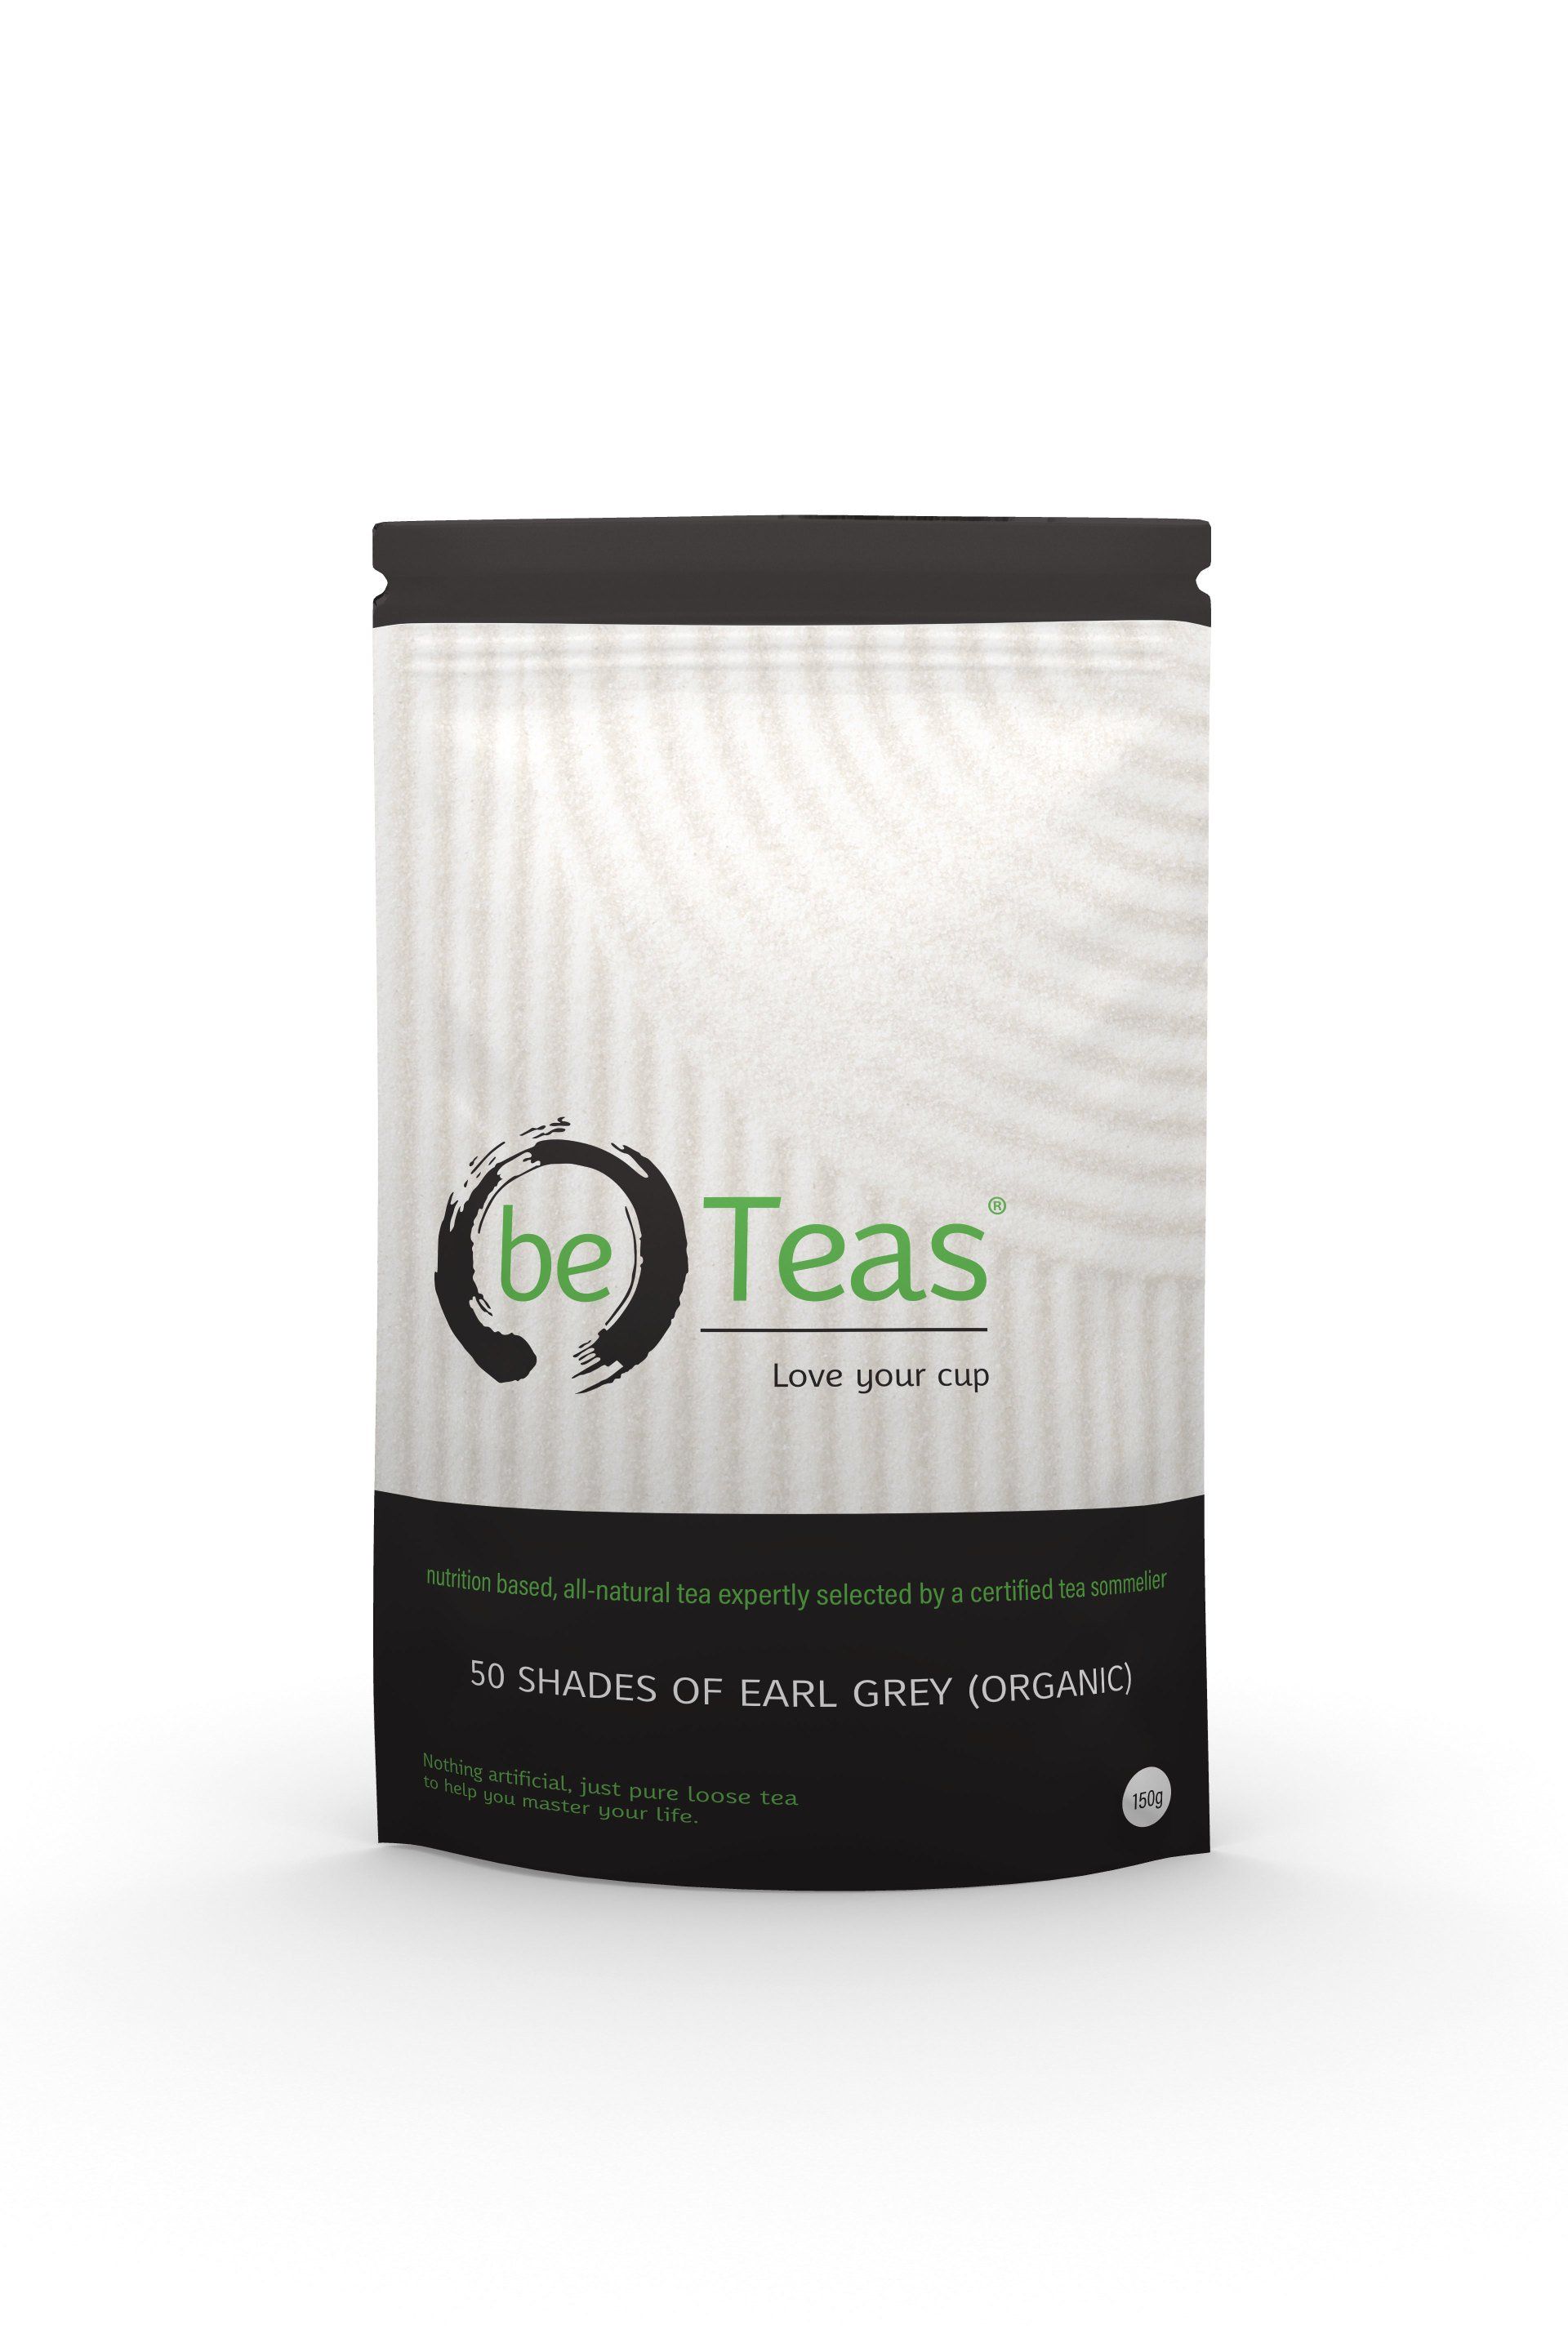 be teas packaging